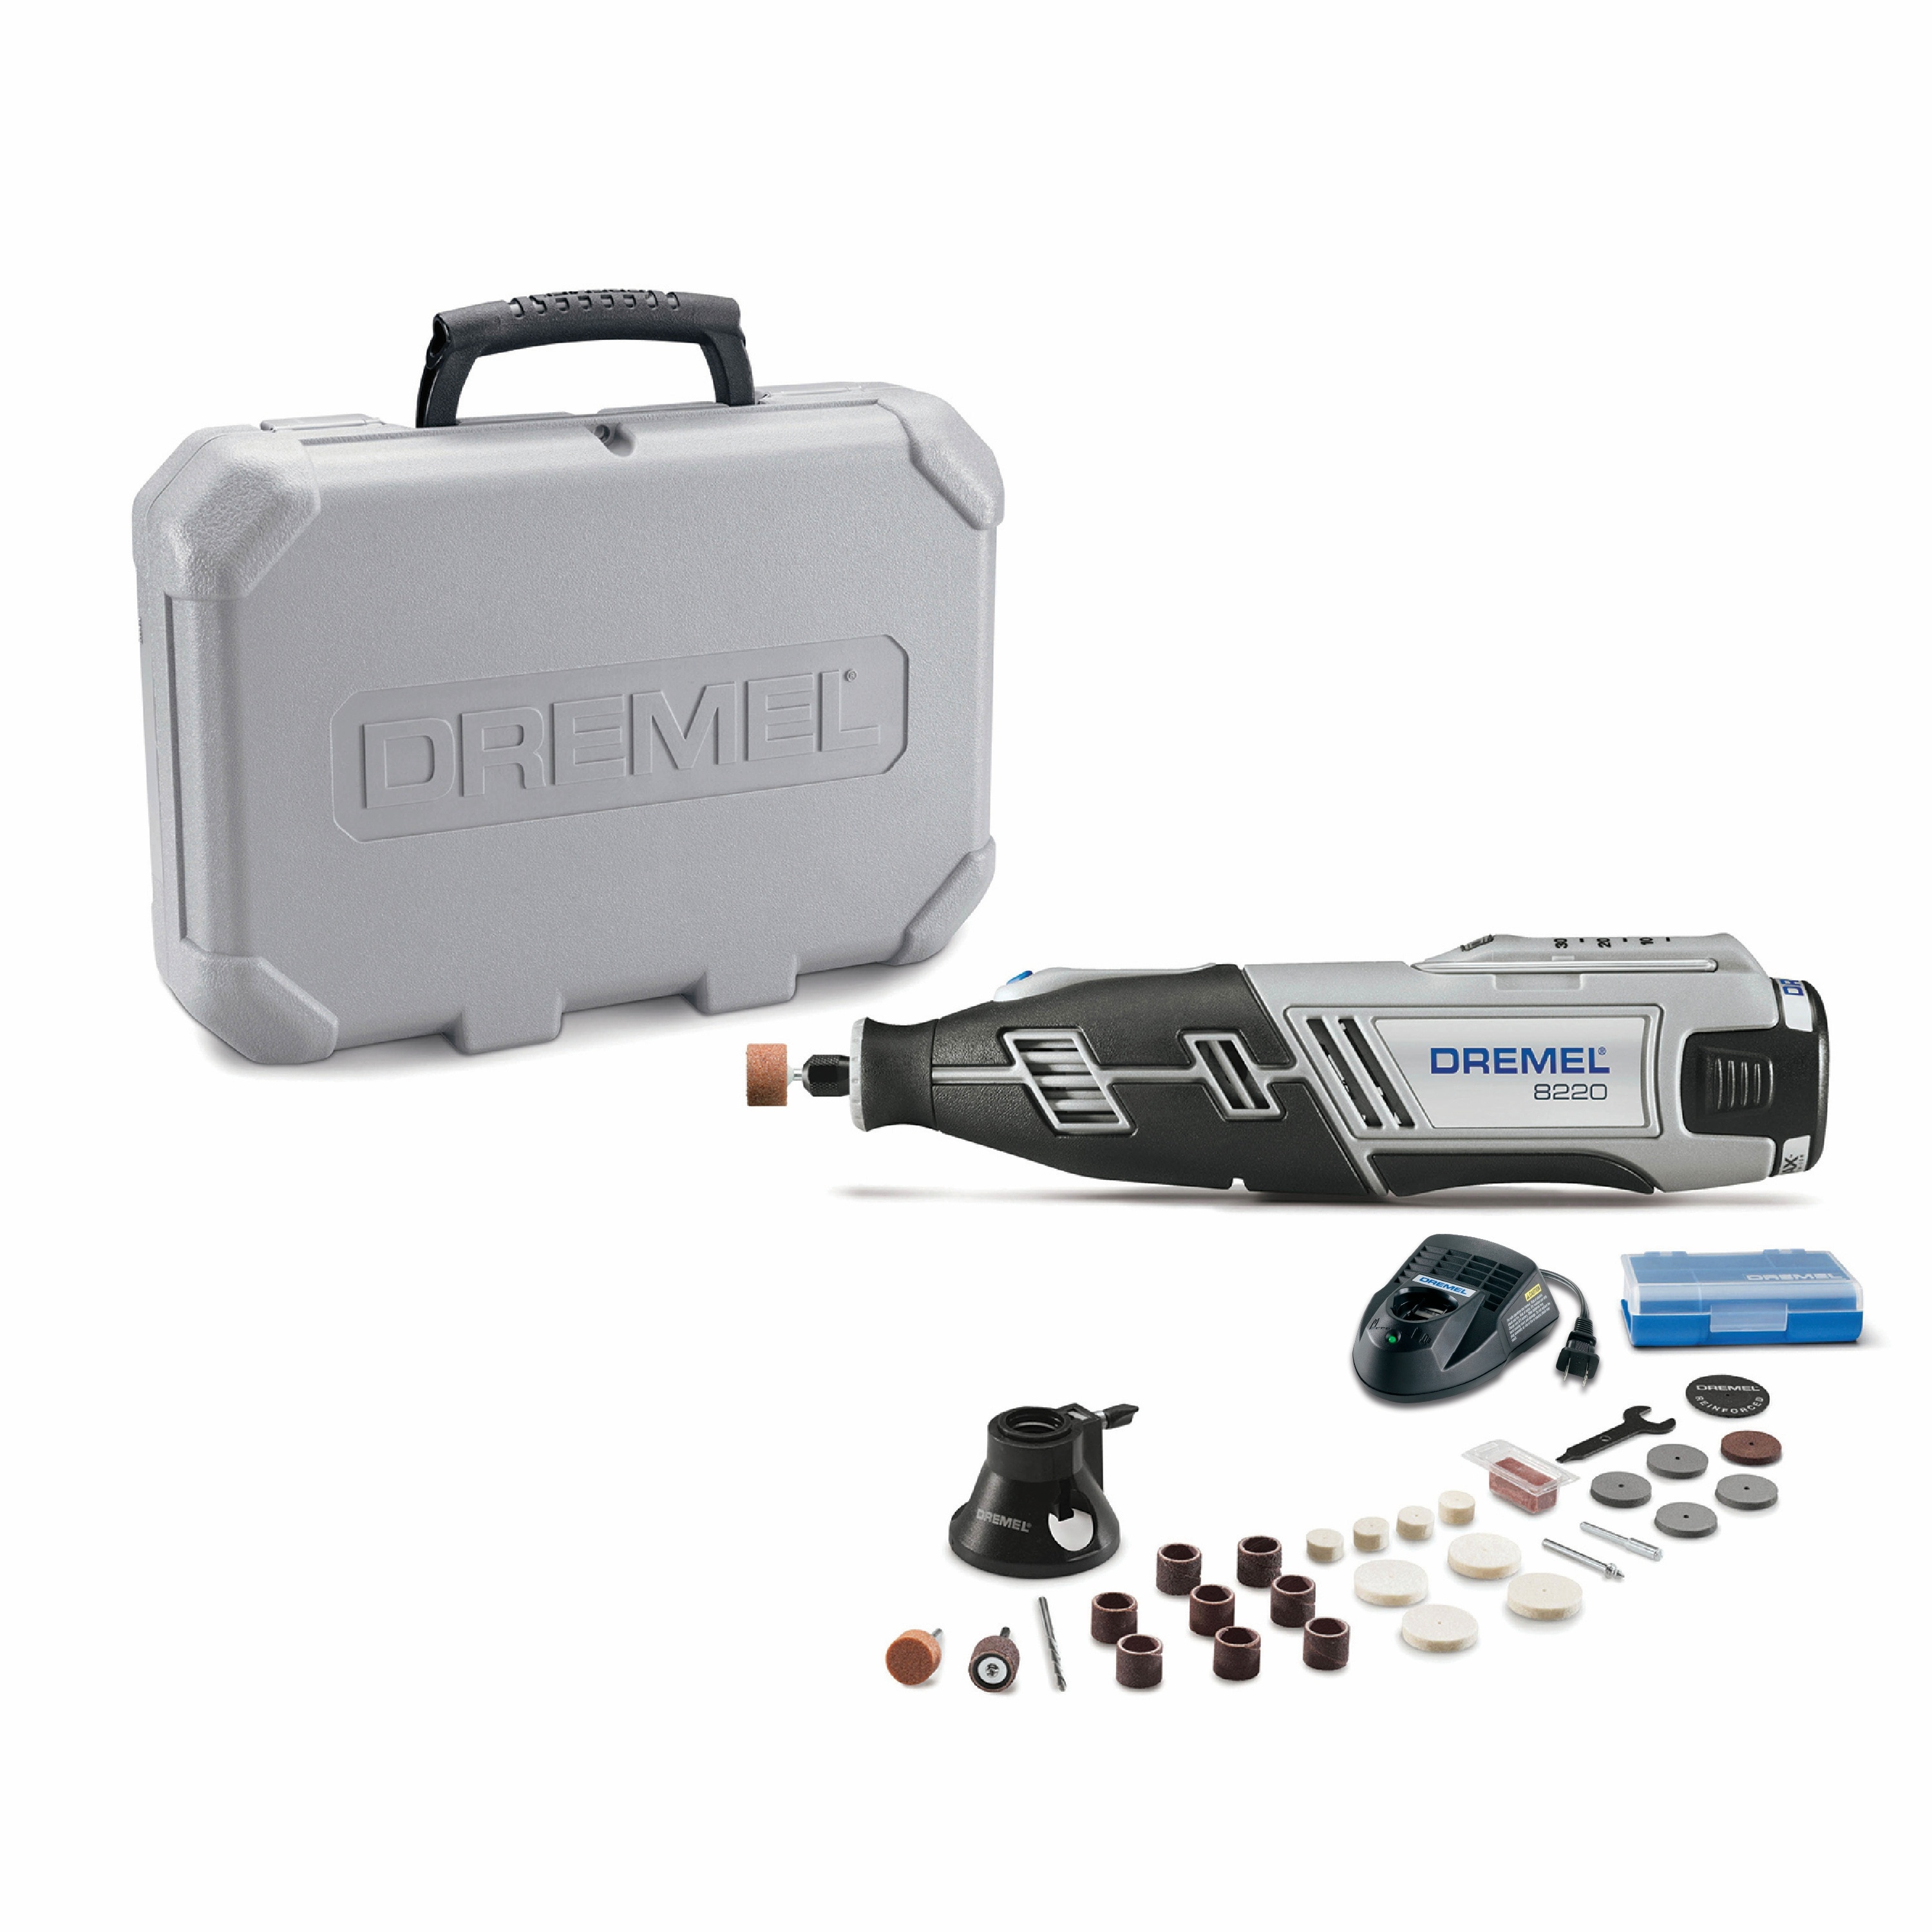 Dremel 8220-1/28 10.8V Lithium-ion Cordless Rotary Tool